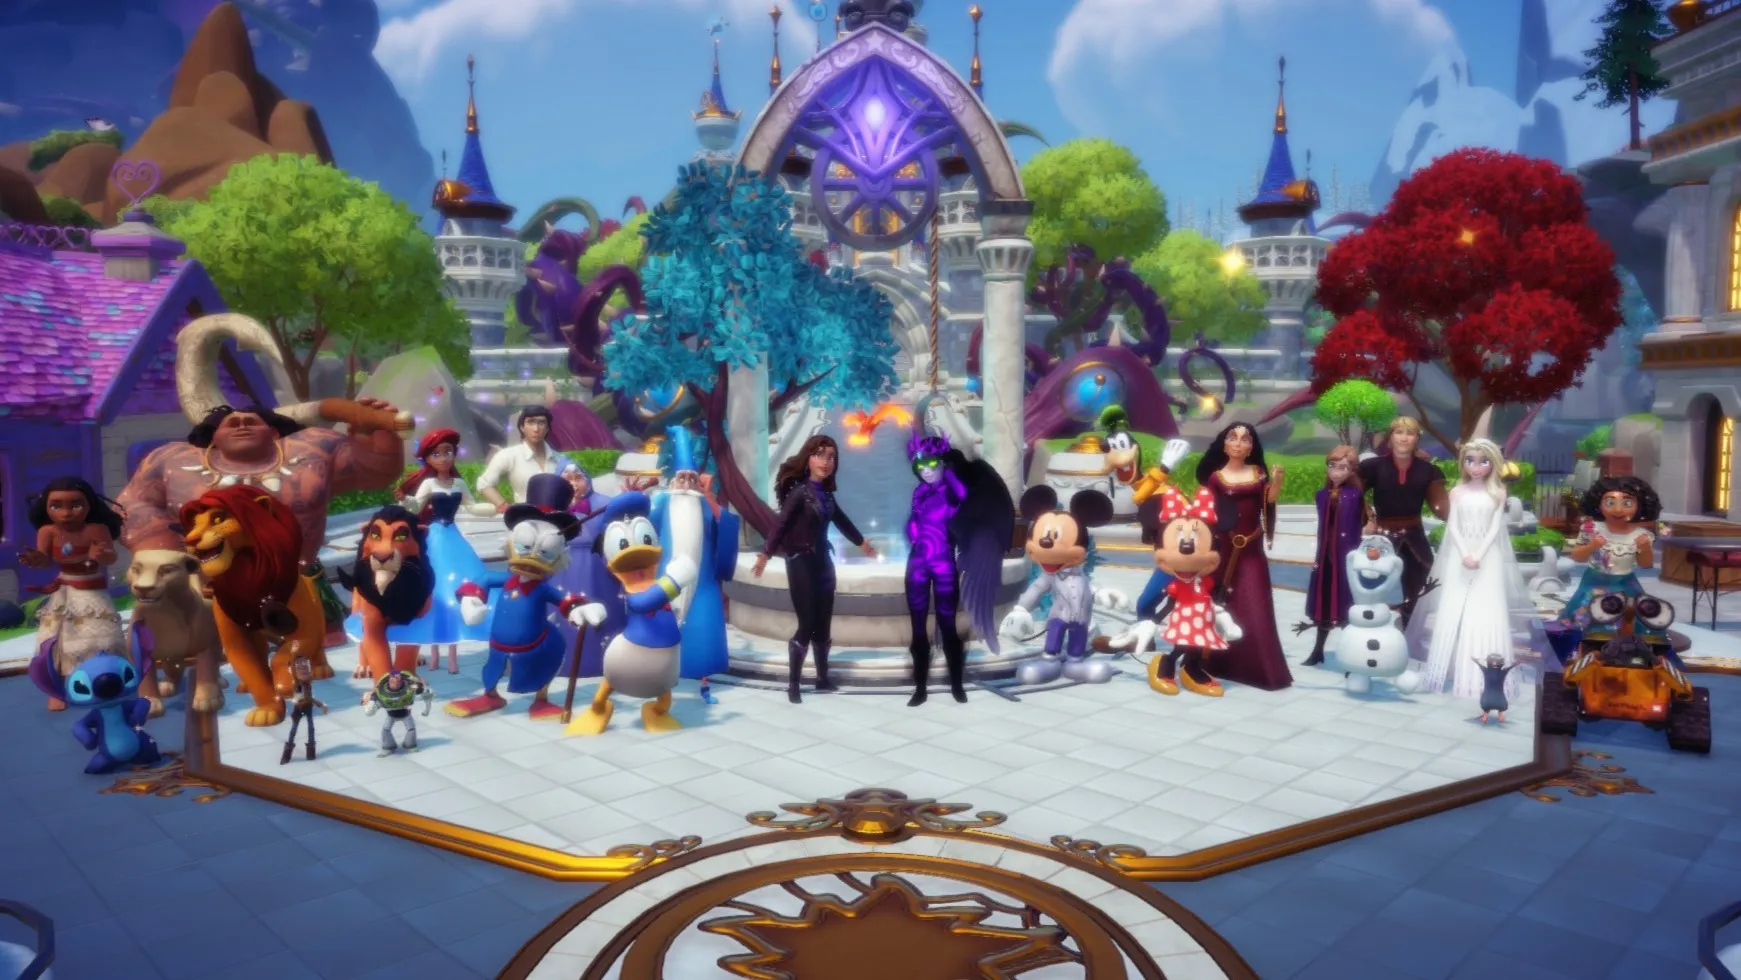 Mərkəz Plaza qarşısında Disney personajlarının kütləvi bir dəstəsi ilə birlikdə dayanan oyunçu yaxşı arzulayır